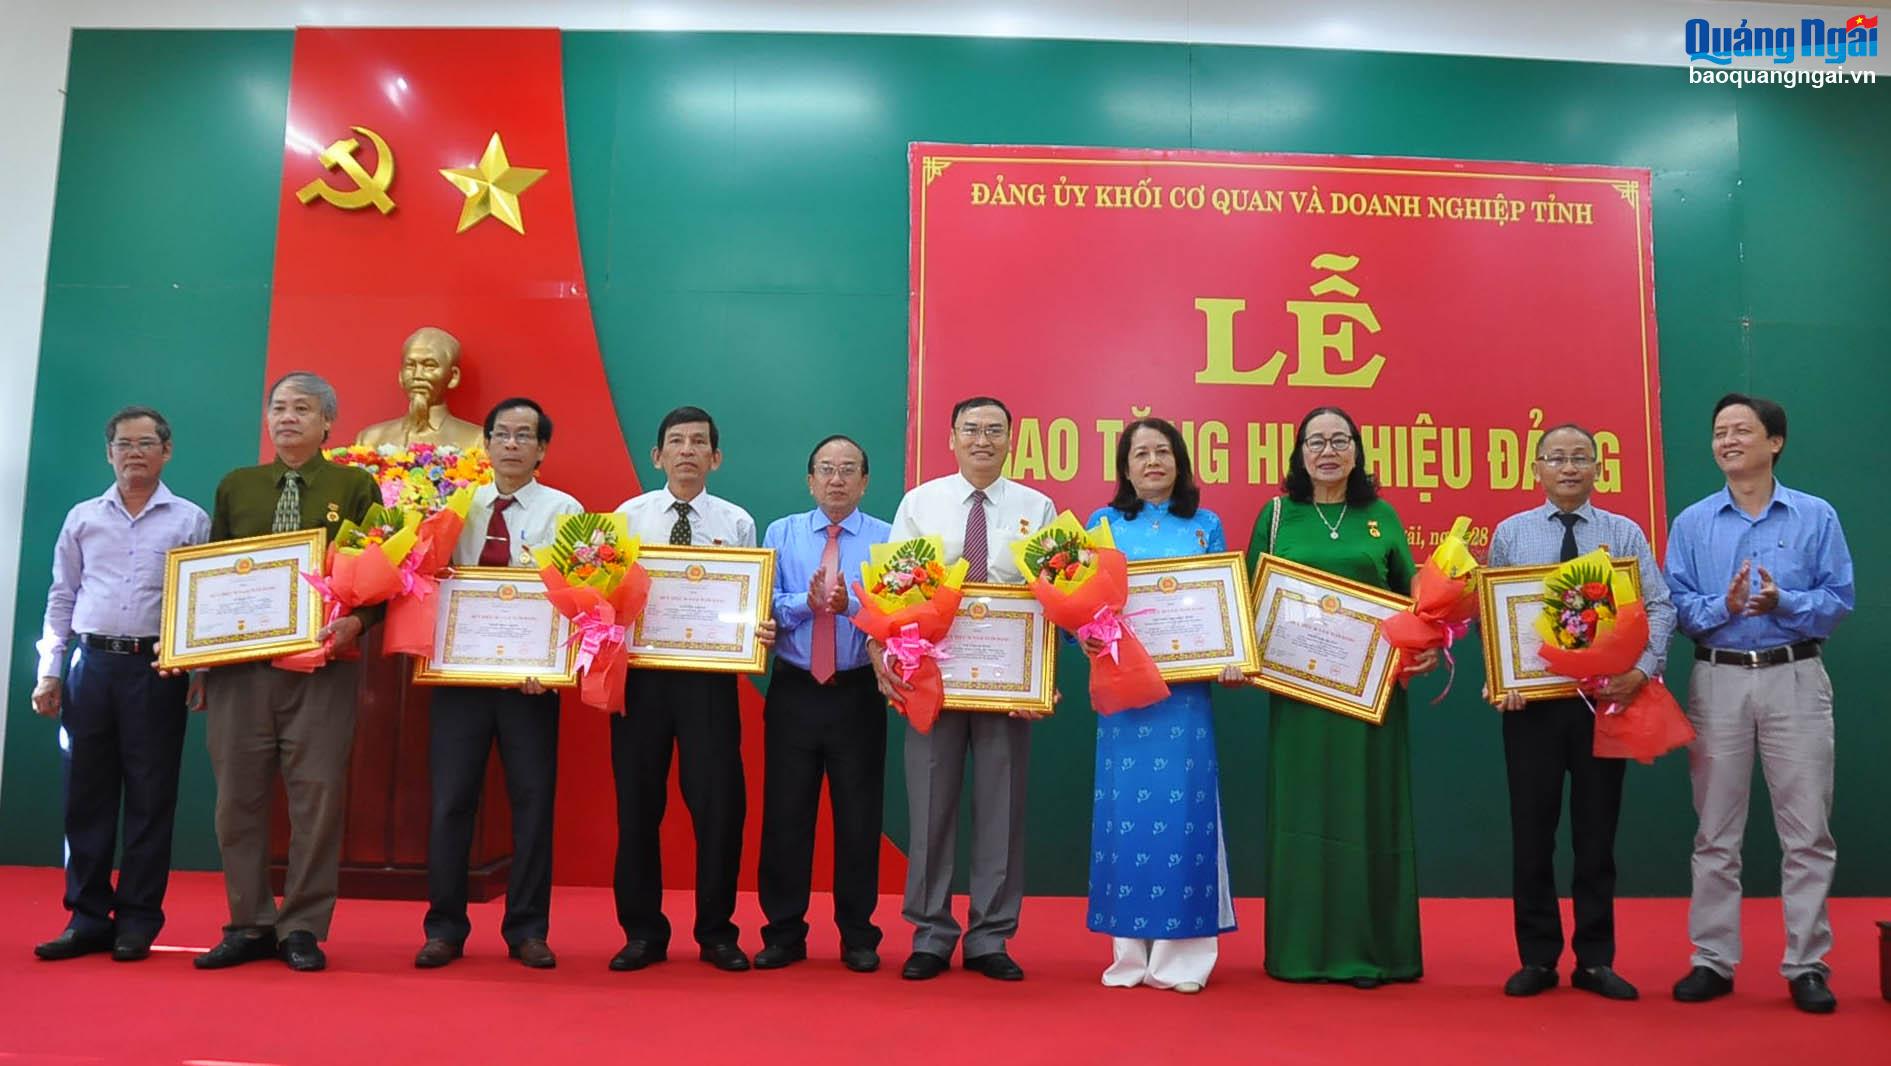 Thường trực Đảng ủy Khối Cơ quan và Doanh nghiệp tỉnh trao Huy hiệu 30 năm tuổi Đảng cho đồng chí Võ Văn Quỳnh và 7 đảng viên.
